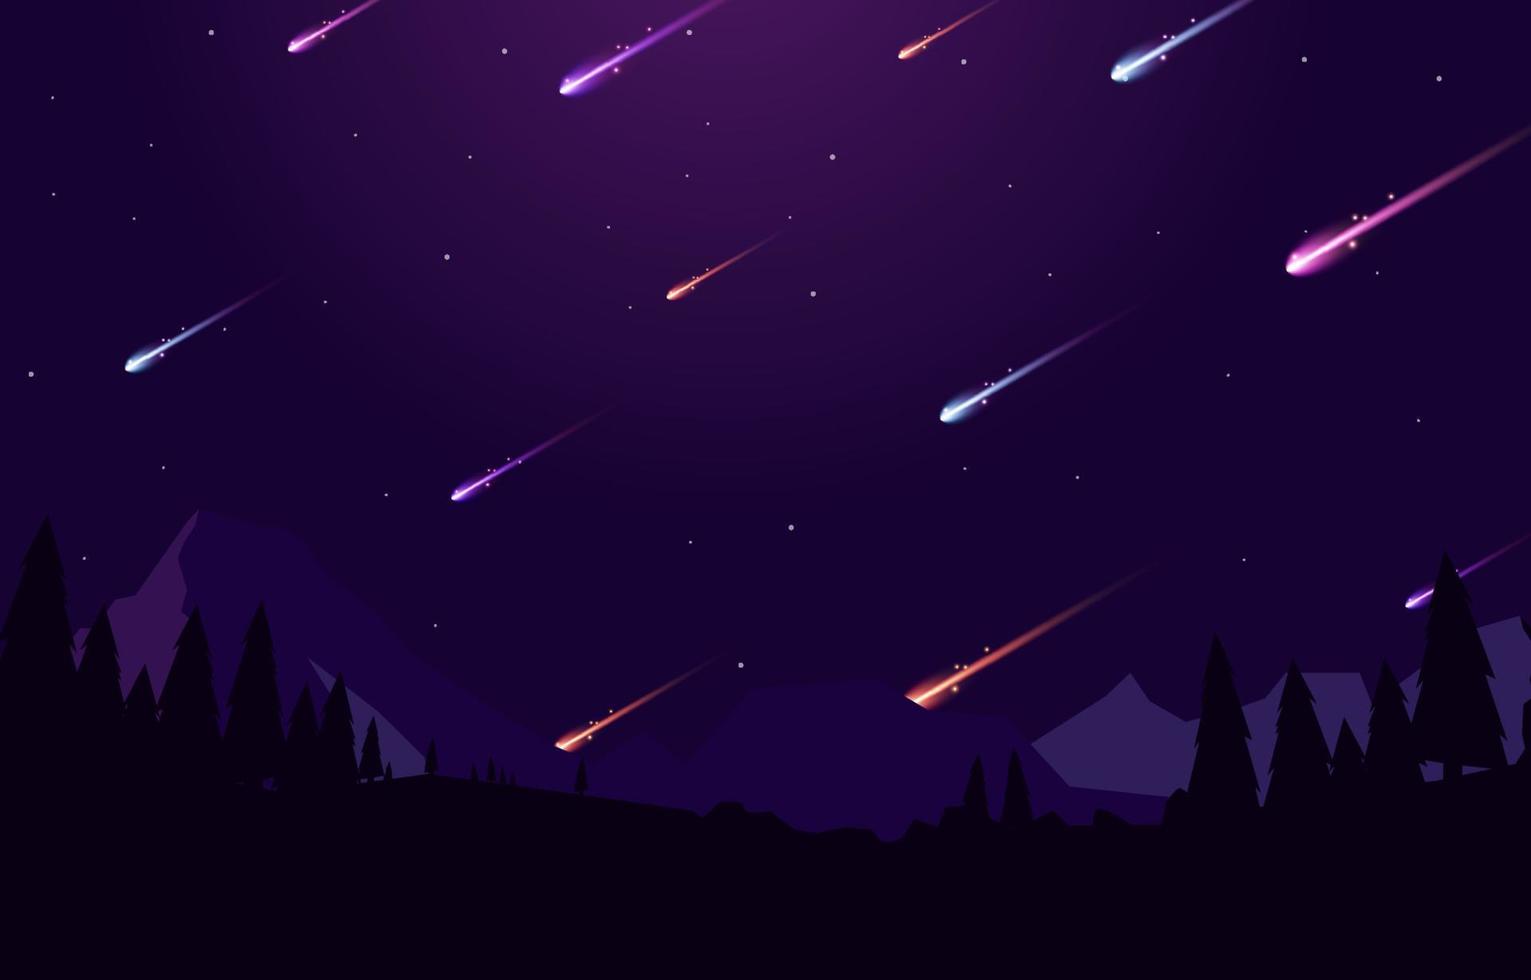 Meteor Shower at Night vector